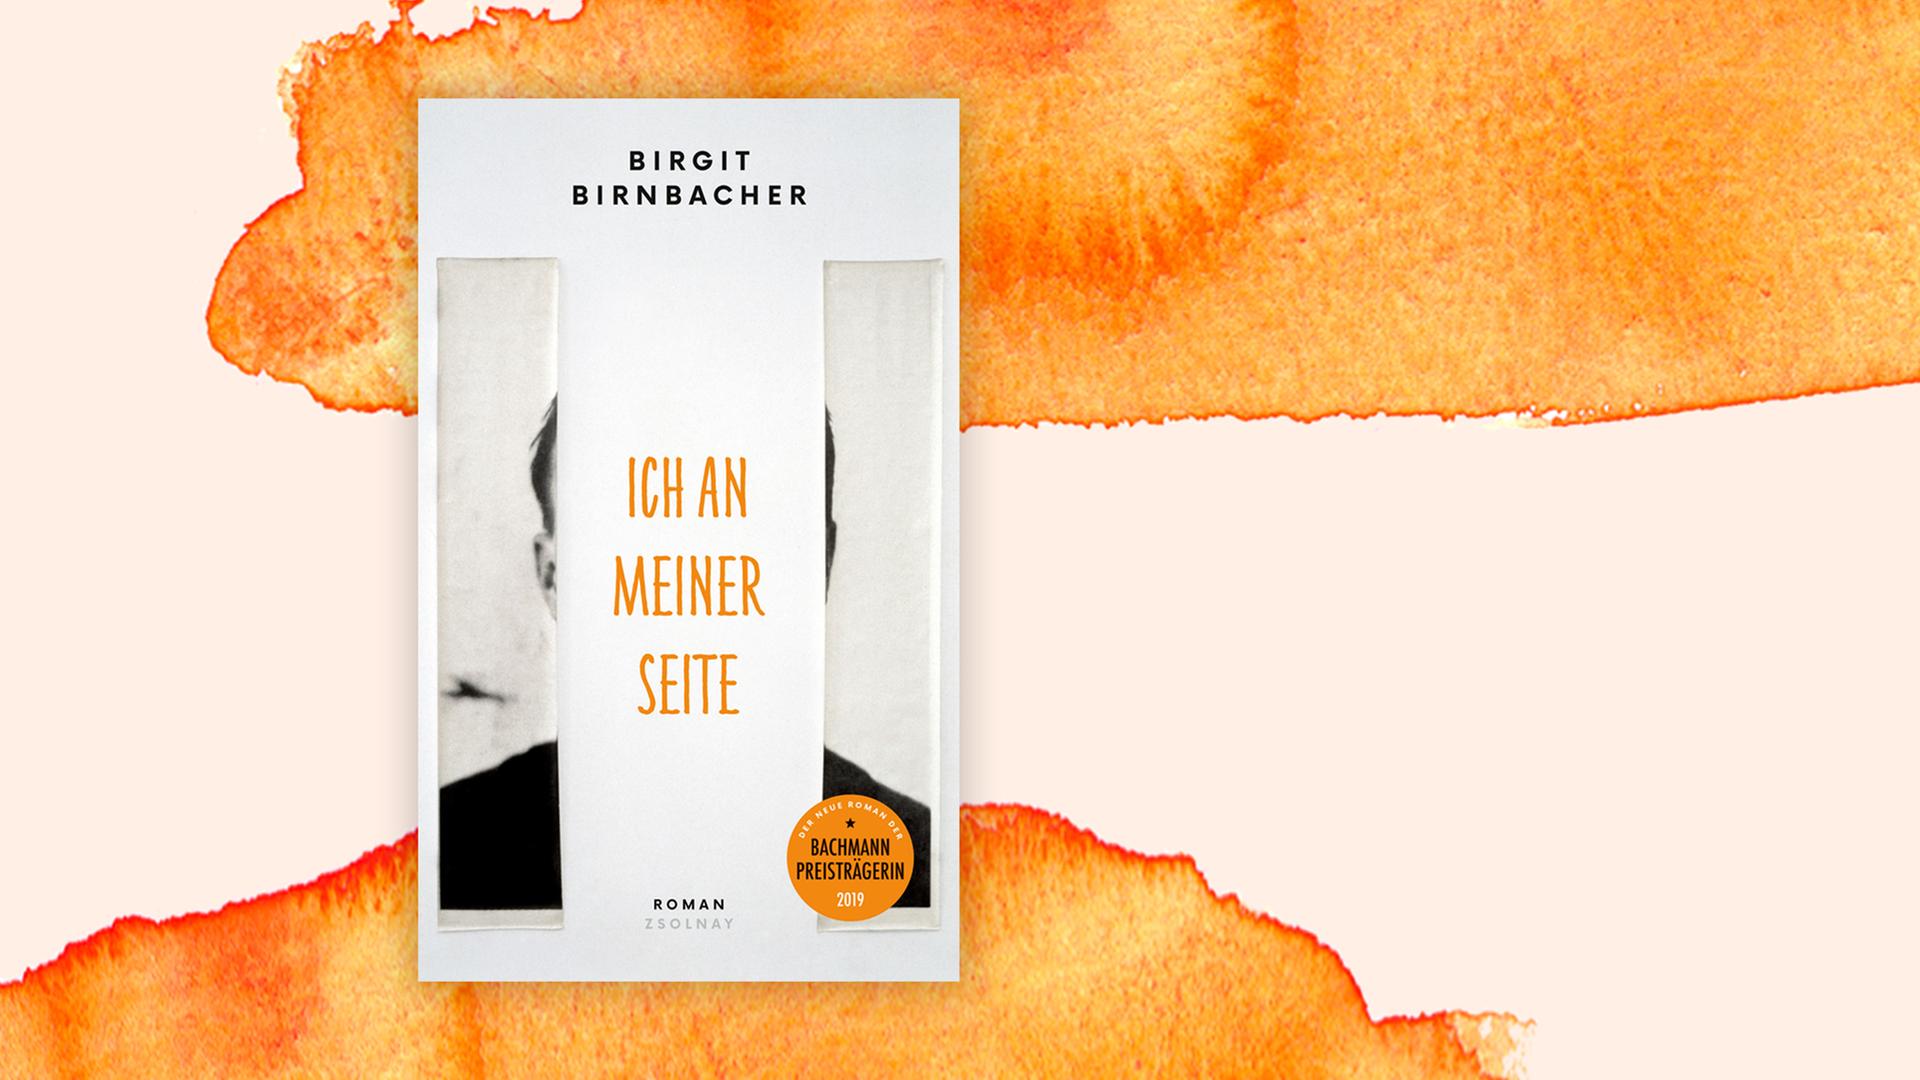 Buchcover zu Birgit Birnbachers Roman "Ich an meiner Seite", vor einem Aquarell-Hintergrund